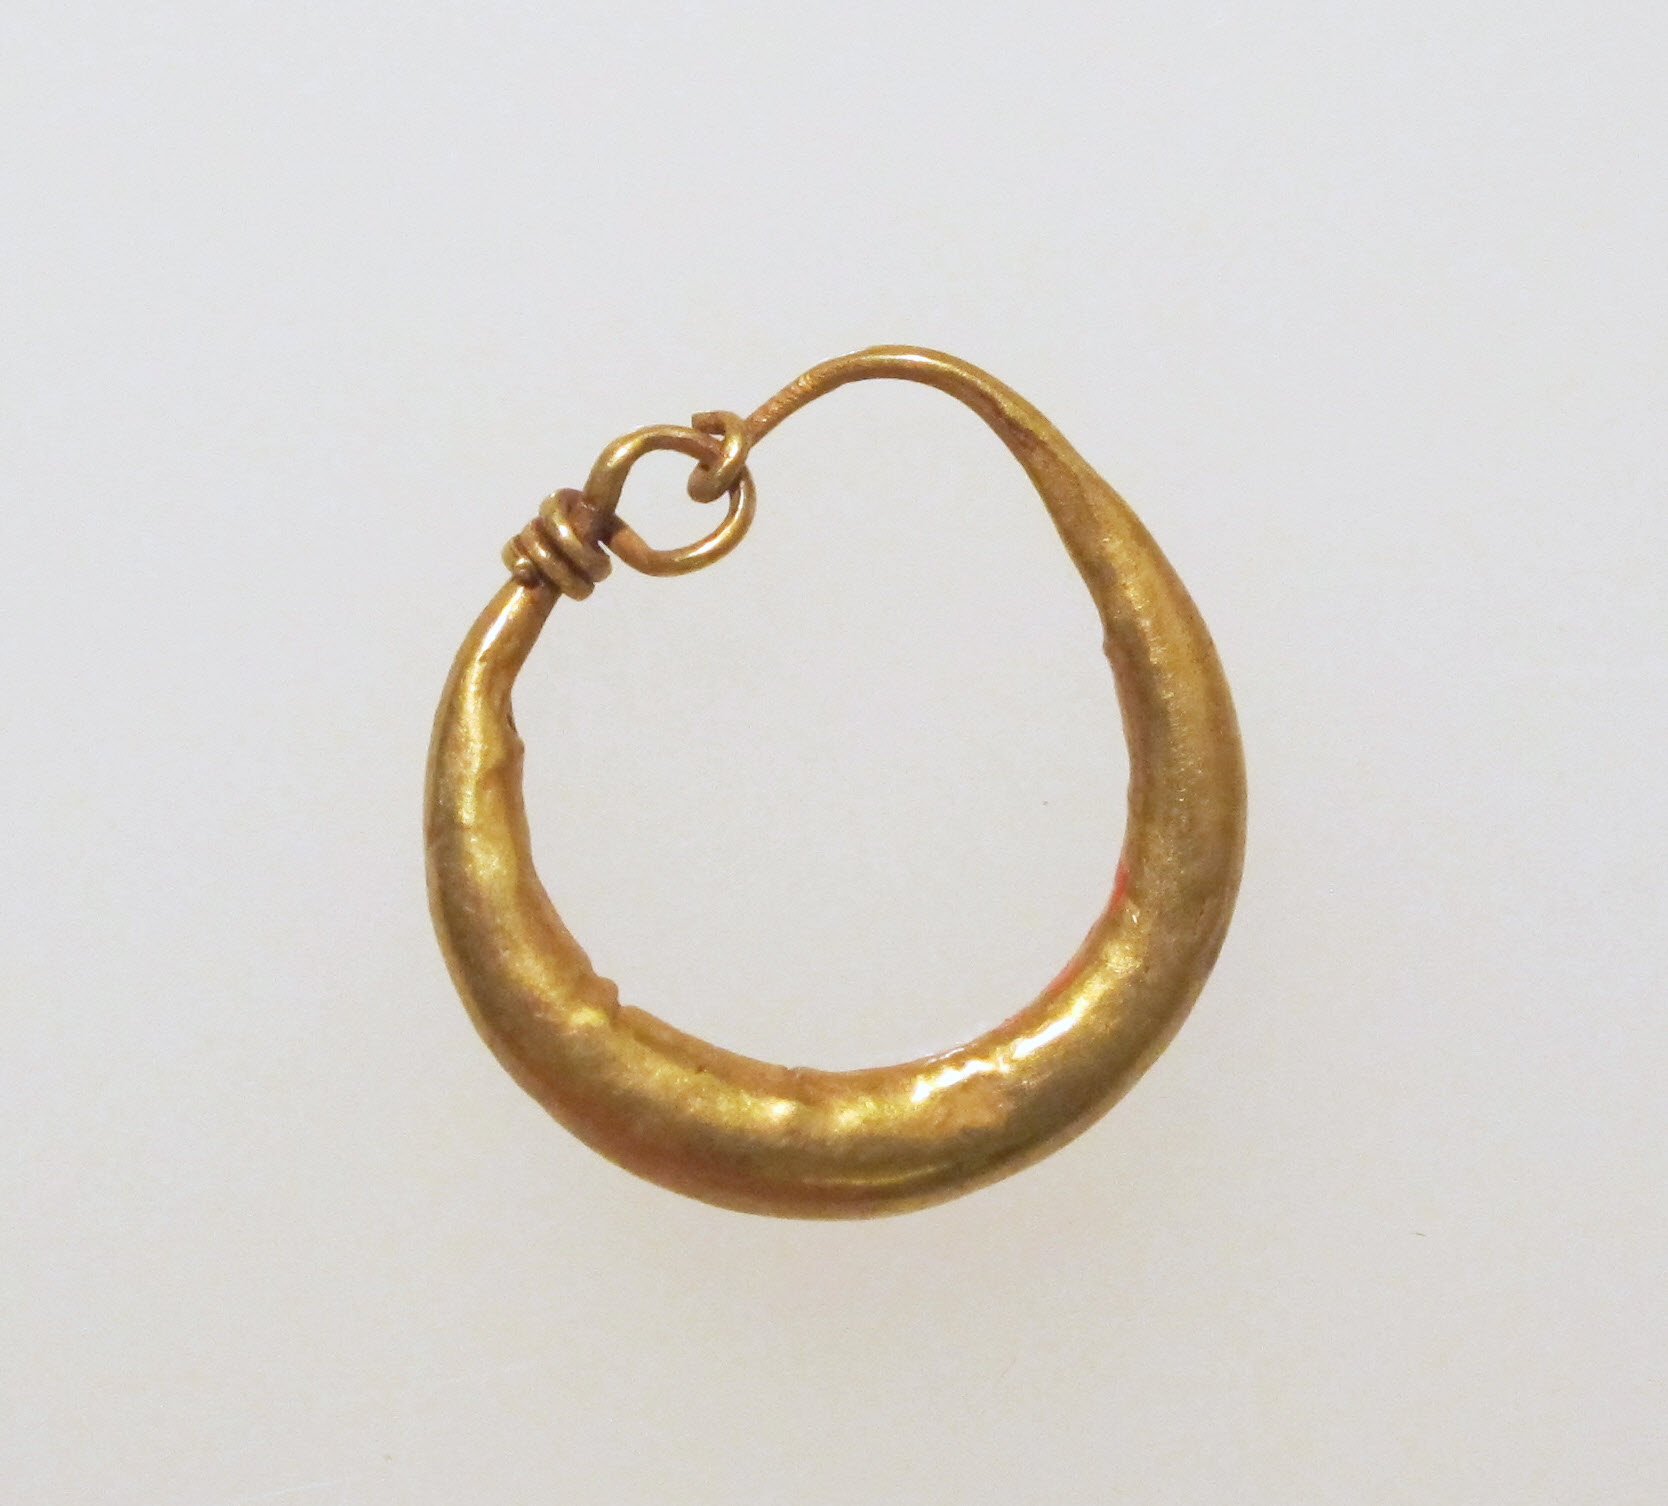 Earring-loop type, plain | The Metropolitan Museum of Art